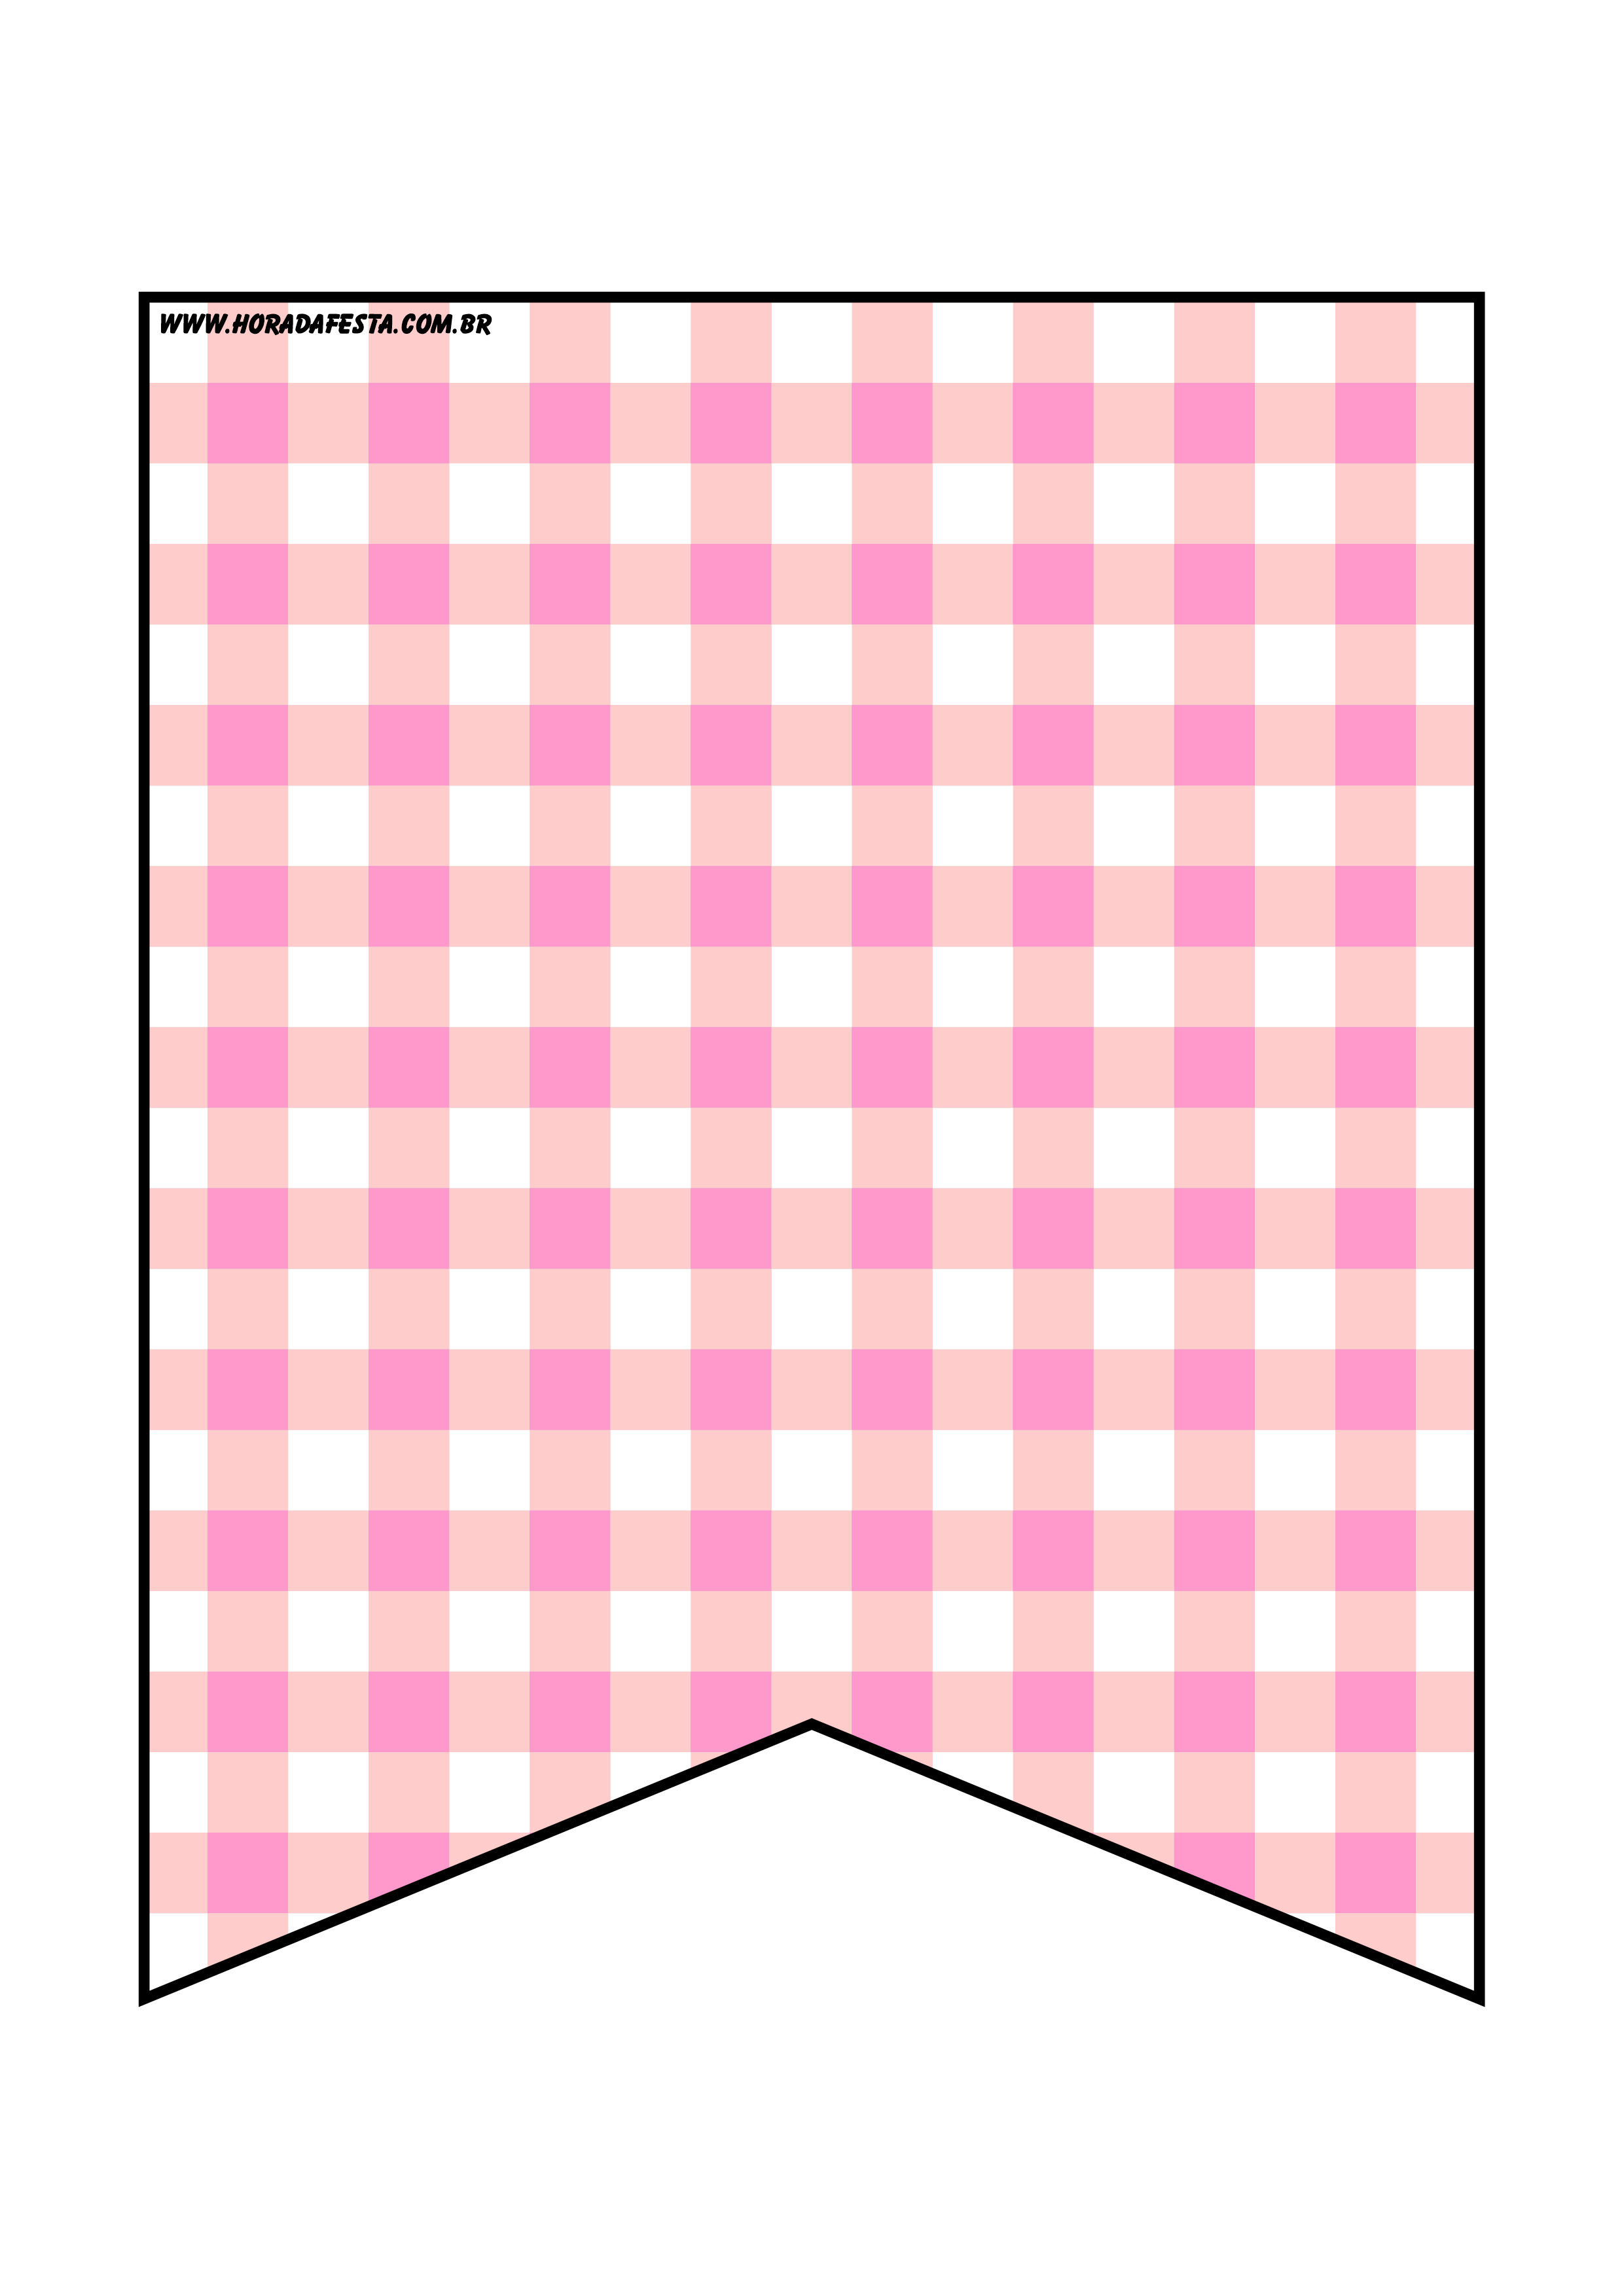 Bandeirinhas de São João xadrez rosa e branco decoração de festa